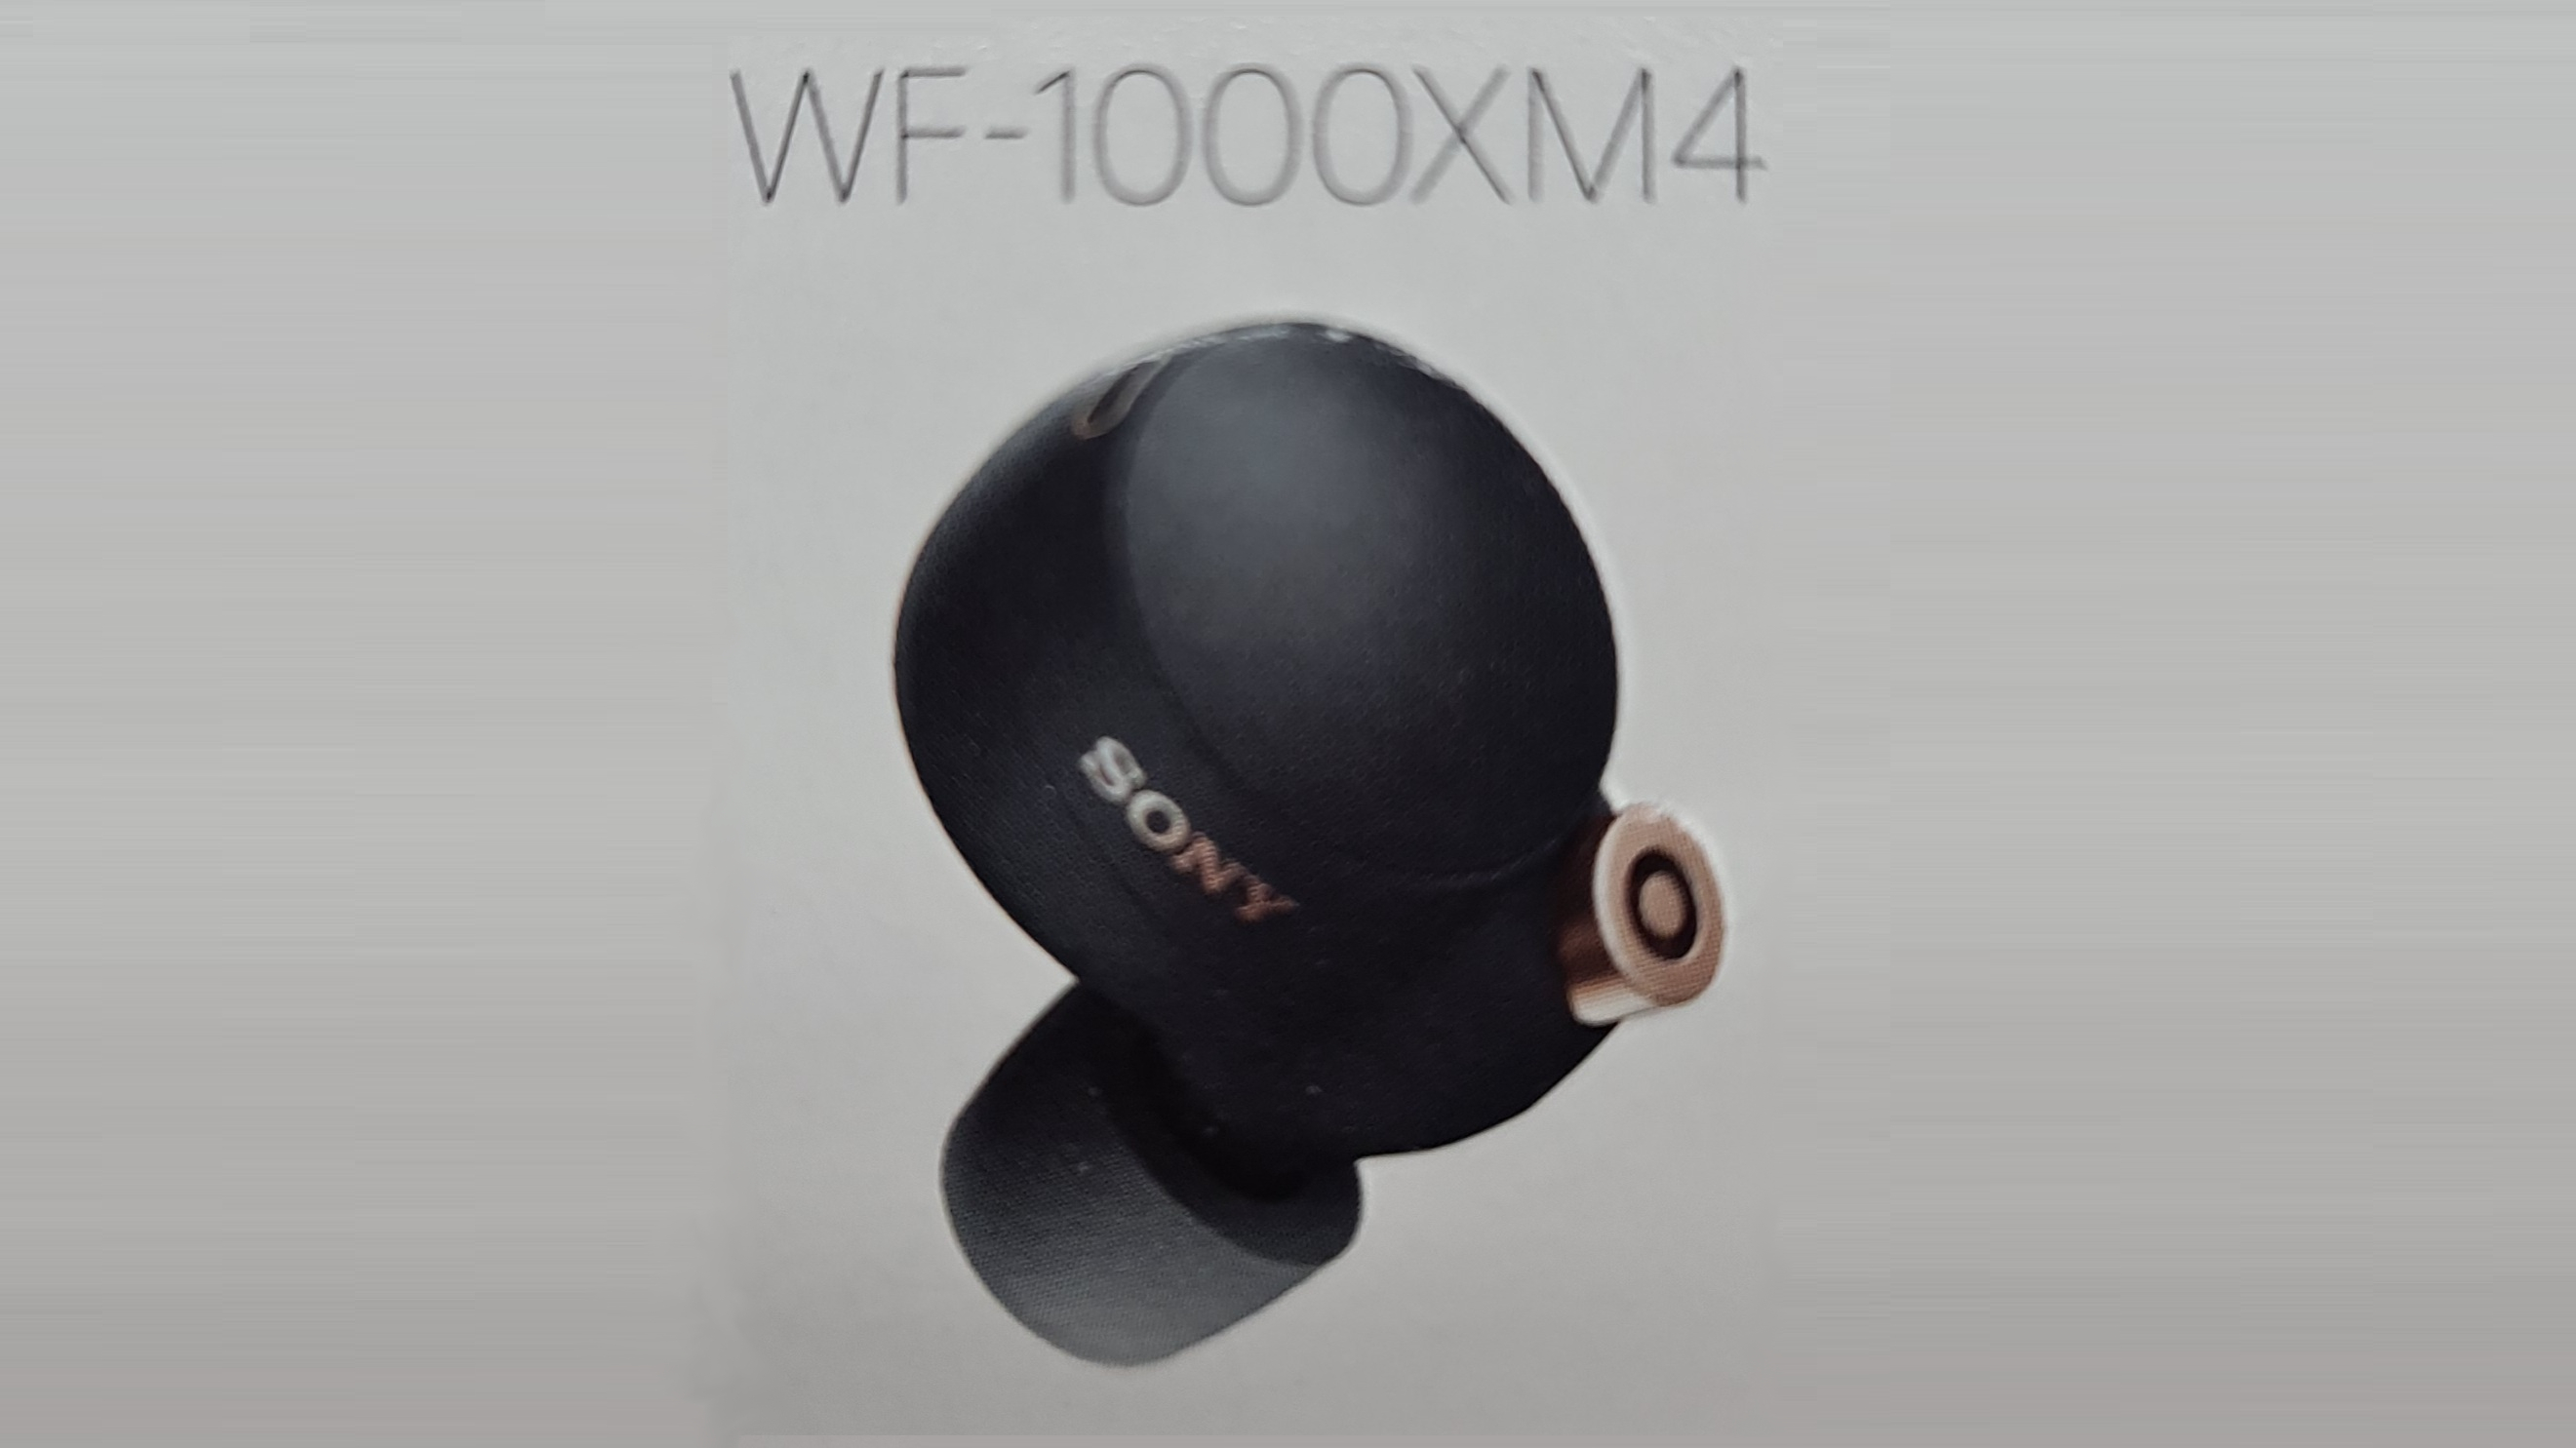 Беспроводные наушники sony wf 1000xm4. Наушники сони WF 1000xm4. Наушники true Wireless Sony wf1000xm4/BM Black. Наушники TWS Sony WF-1000xm4.